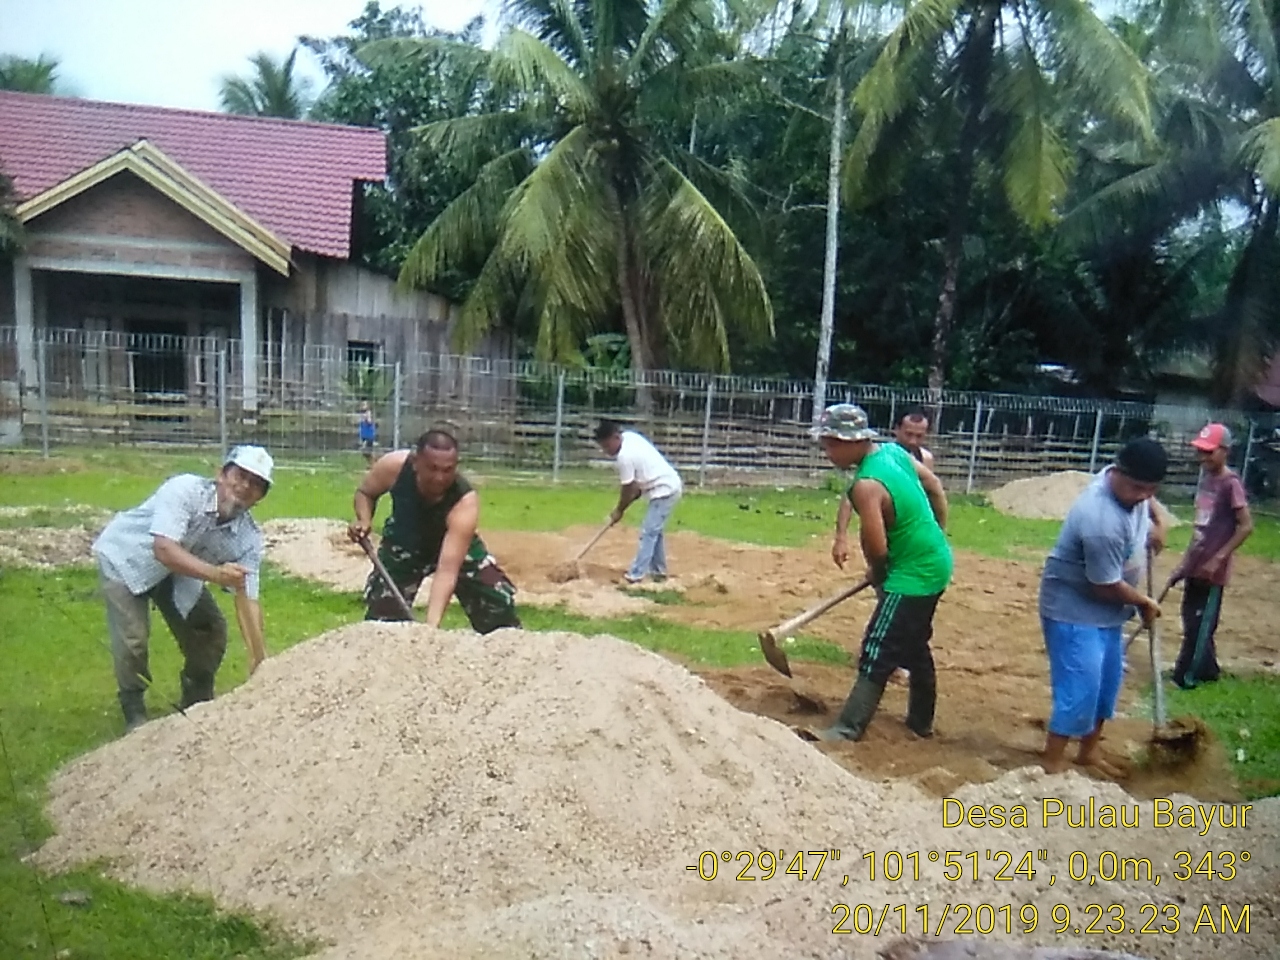 Anggota Koramil Cerenti Gotong Royong Bersama Masyarakat Desa Pulau Bayur.